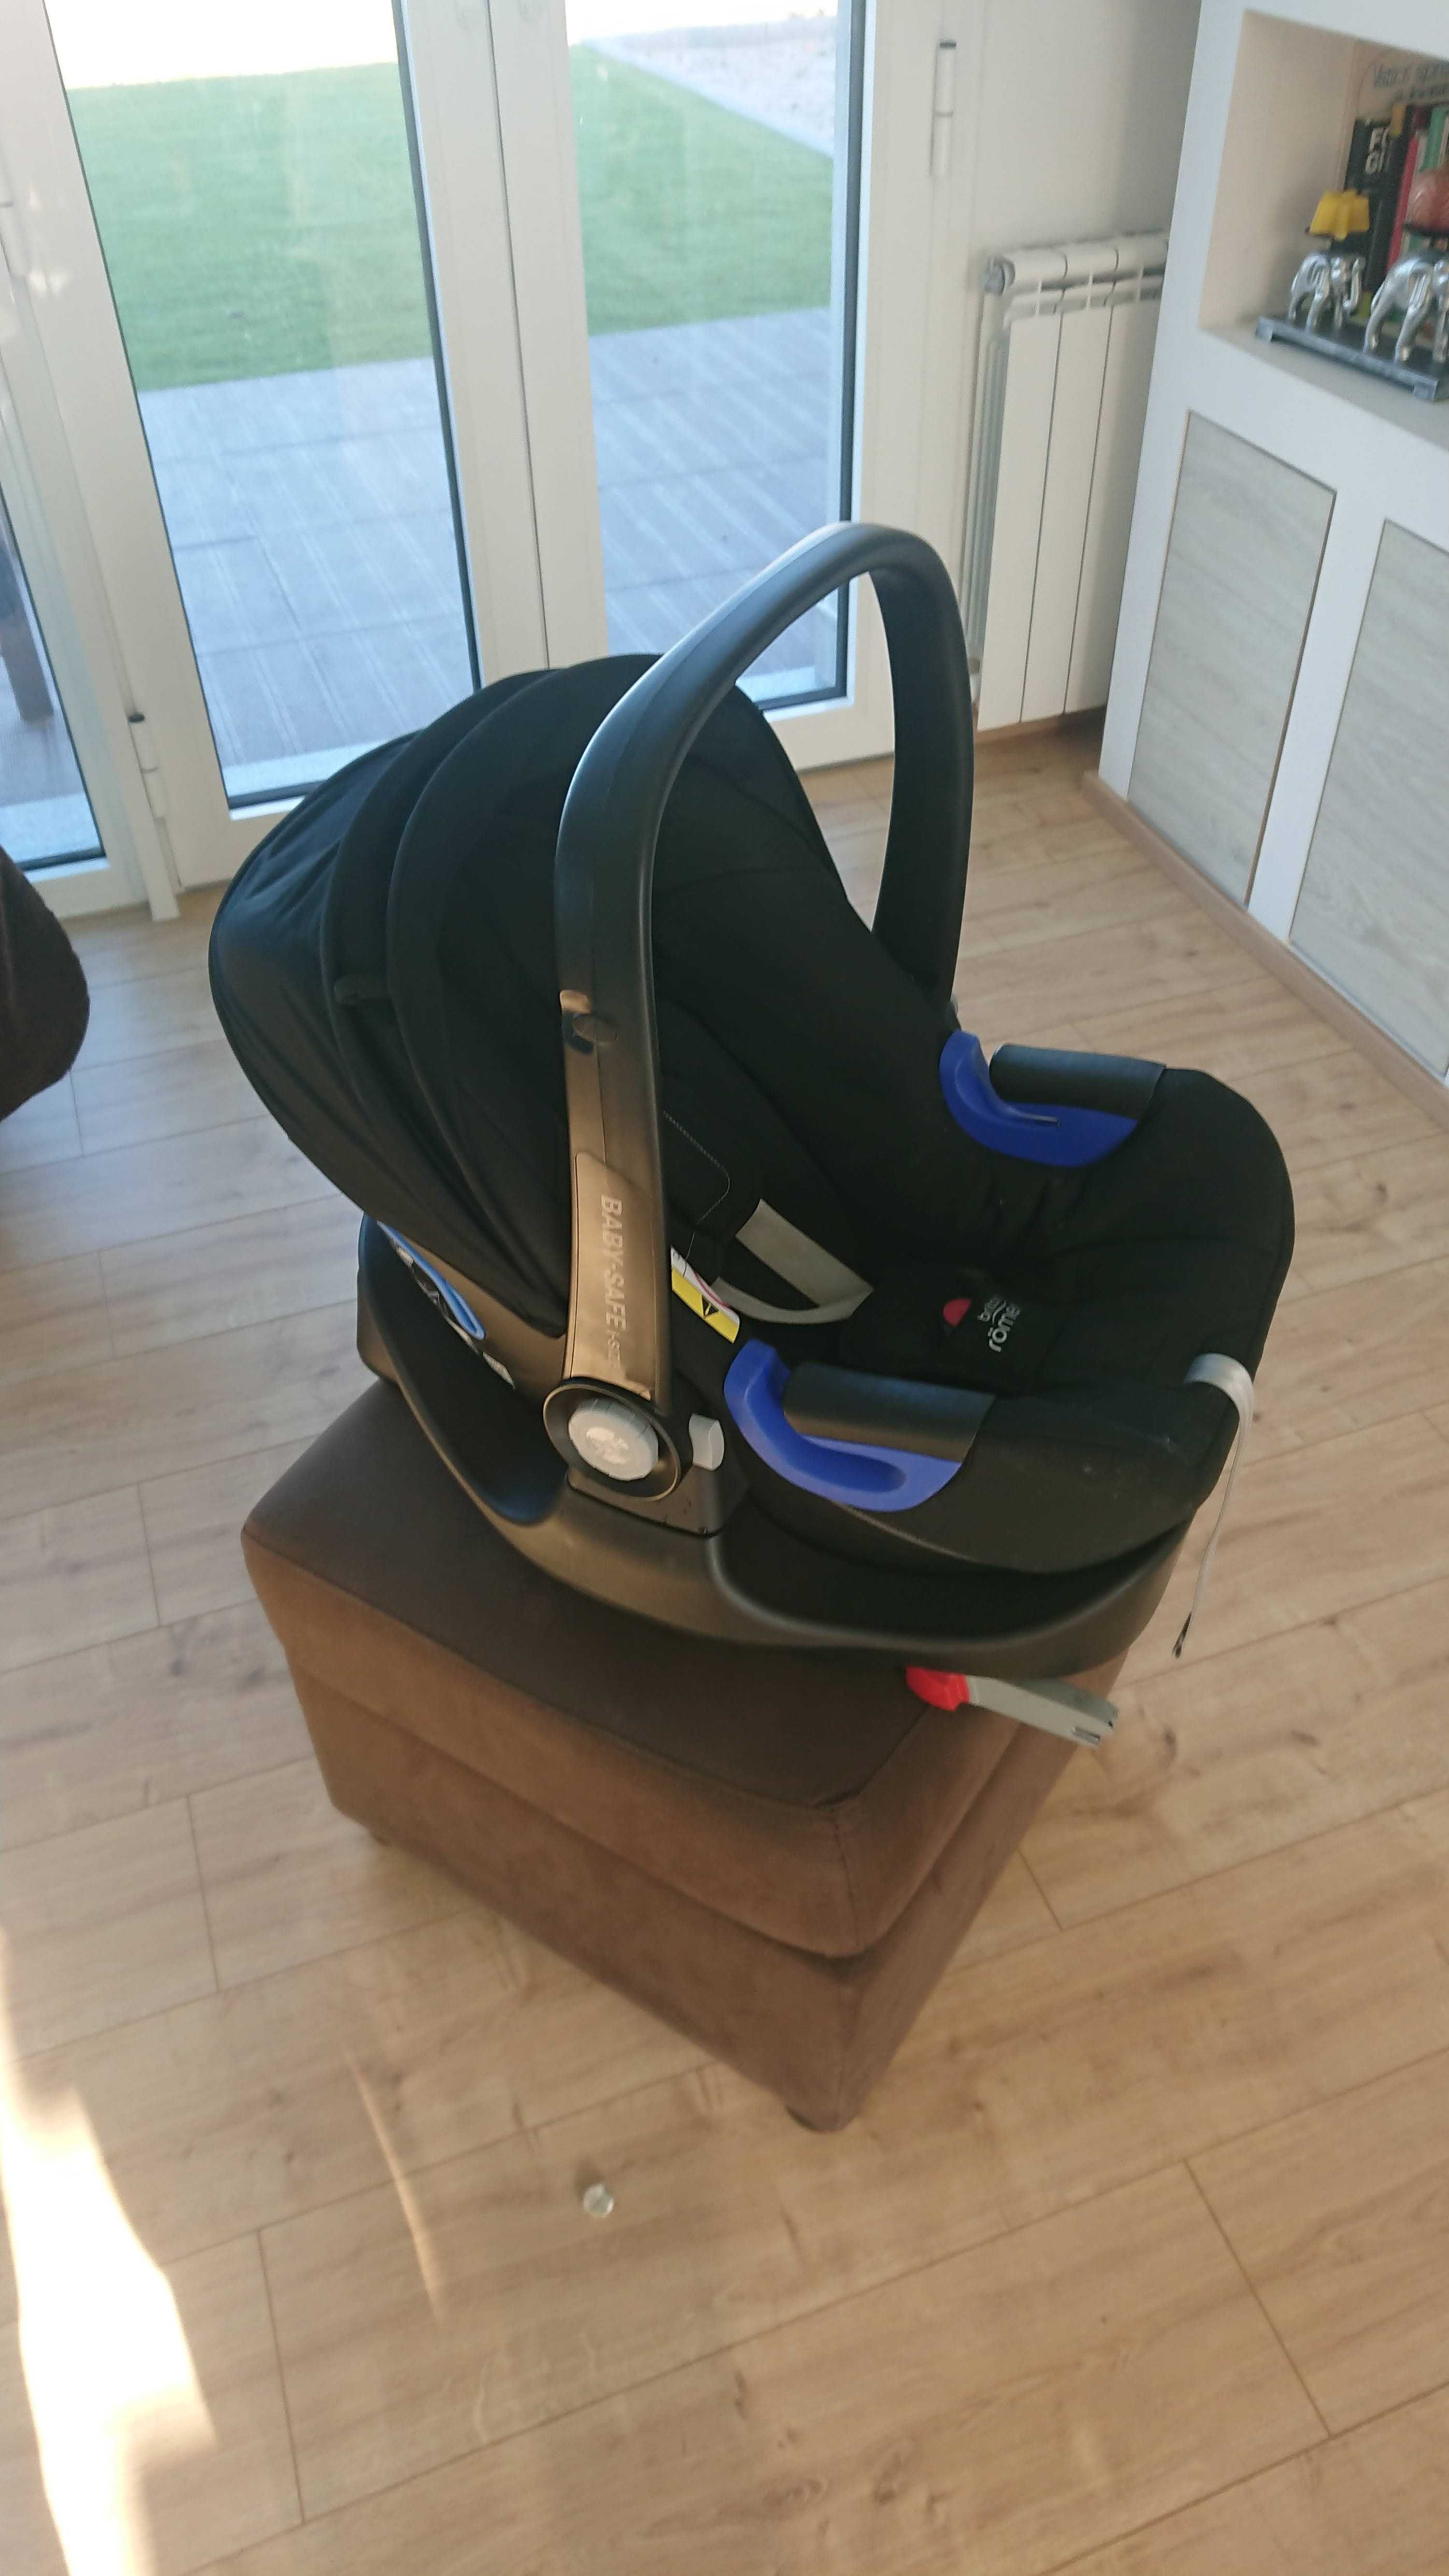 Carrinho de passeio B-Agile Britax + cadeira Baby-safe i-size + Isofix